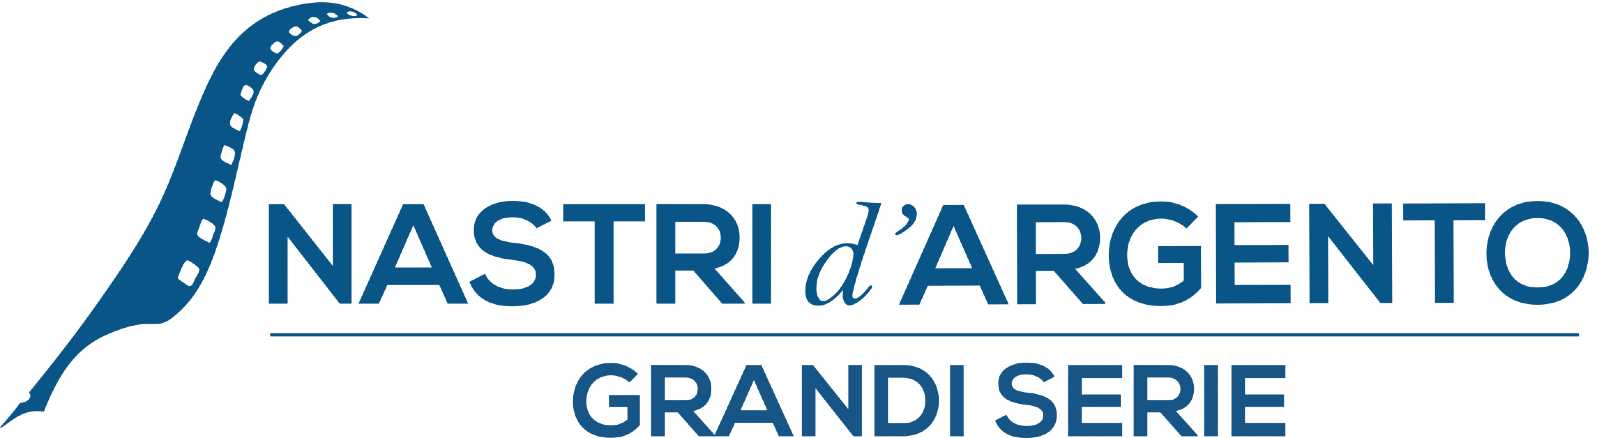 NASTRI d'ARGENTO GRANDI SERIE 2023 - Ecco tutte le candidature